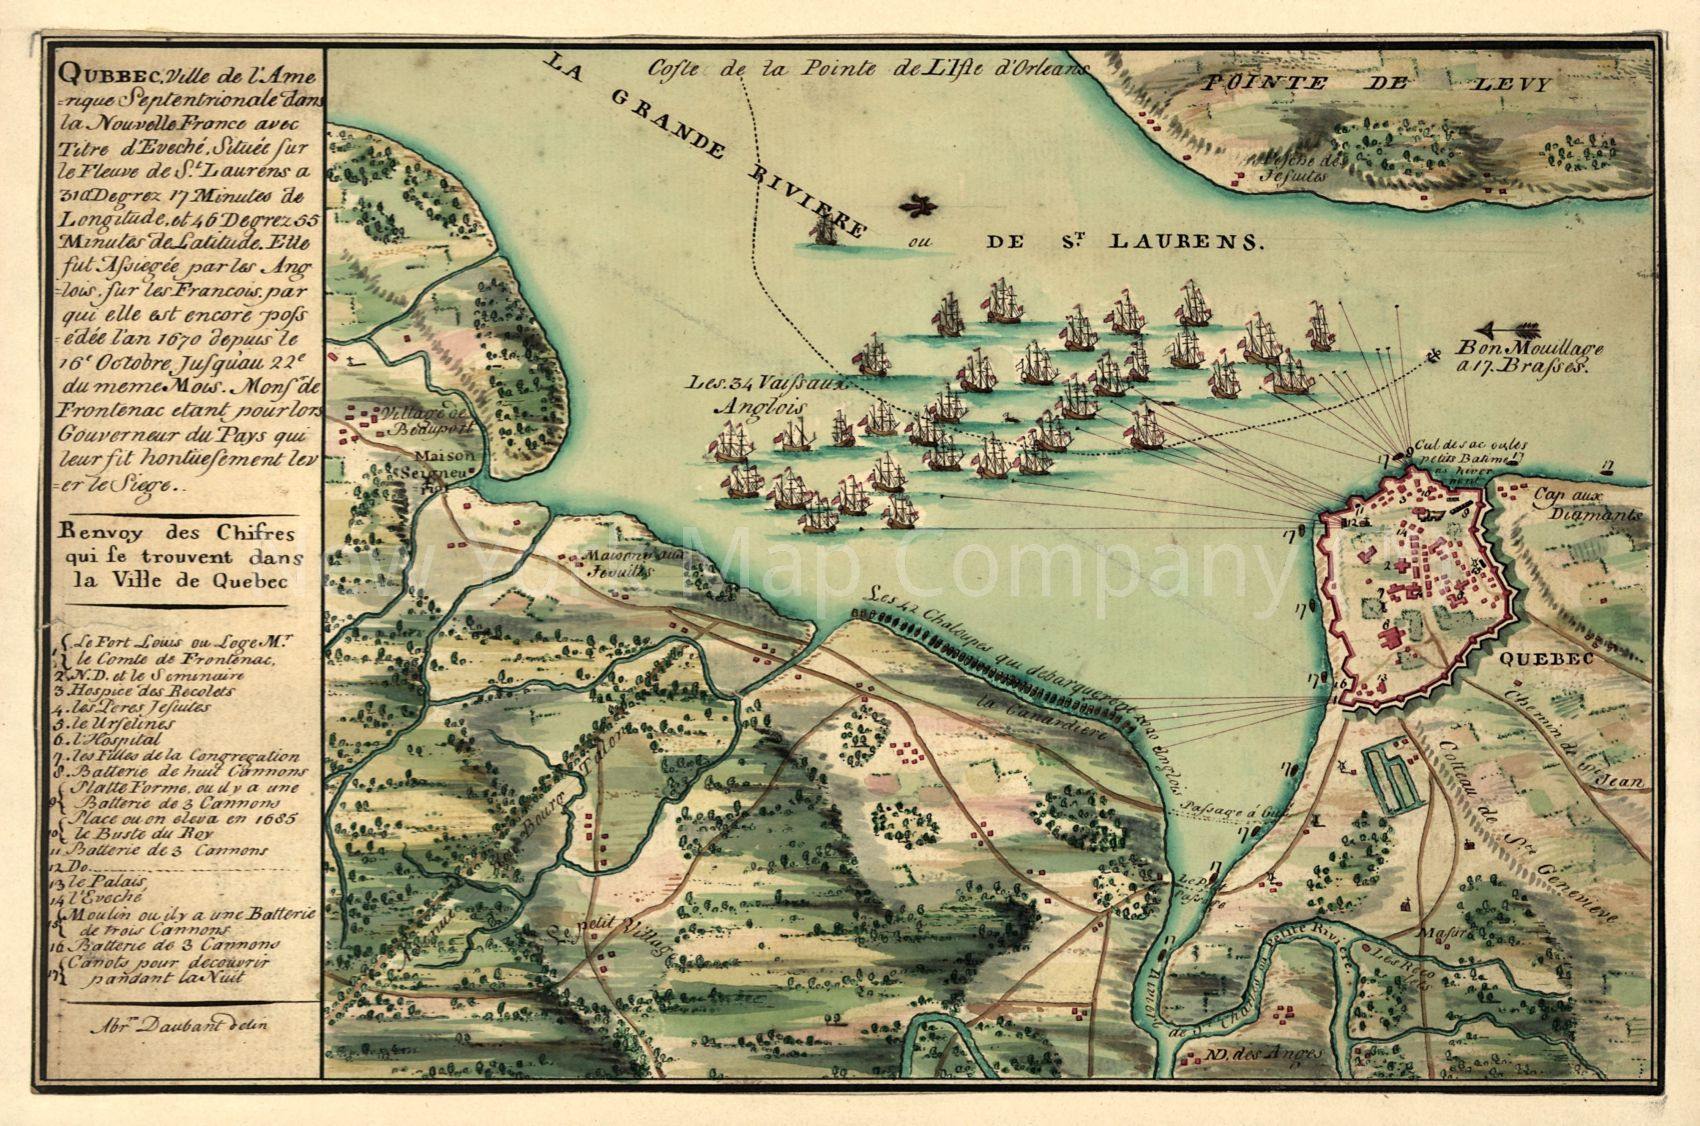 1755 map Qubbec, ville de l'Amerique septentrionale dans la Nouvelle France avec titre d'Eveché située sur le fleuve de St. Laurens a 310 degrez 17 minutes de longitude et 46 degrez 55 minutes de latitude: elle fut Assiegée par les Anglois sur les Franco - New York Map Company